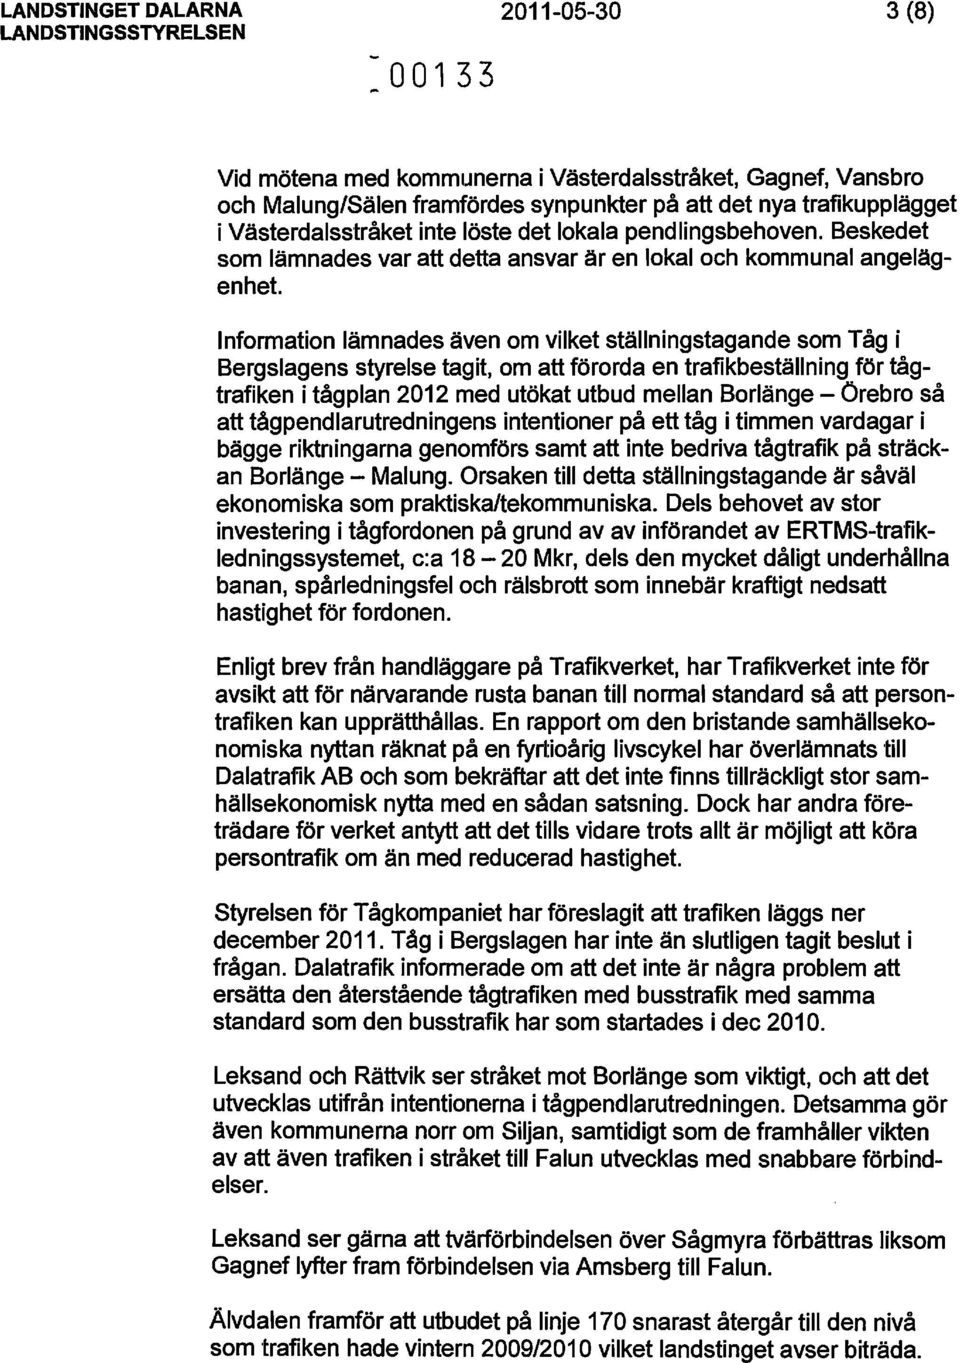 Information lämnades även om vilket ställningstagande som Tåg i Bergslagens styrelse tagit, om att förorda en trafikbeställning för tågtrafiken i tågplan 2012 med utökat utbud mellan Borlänge -